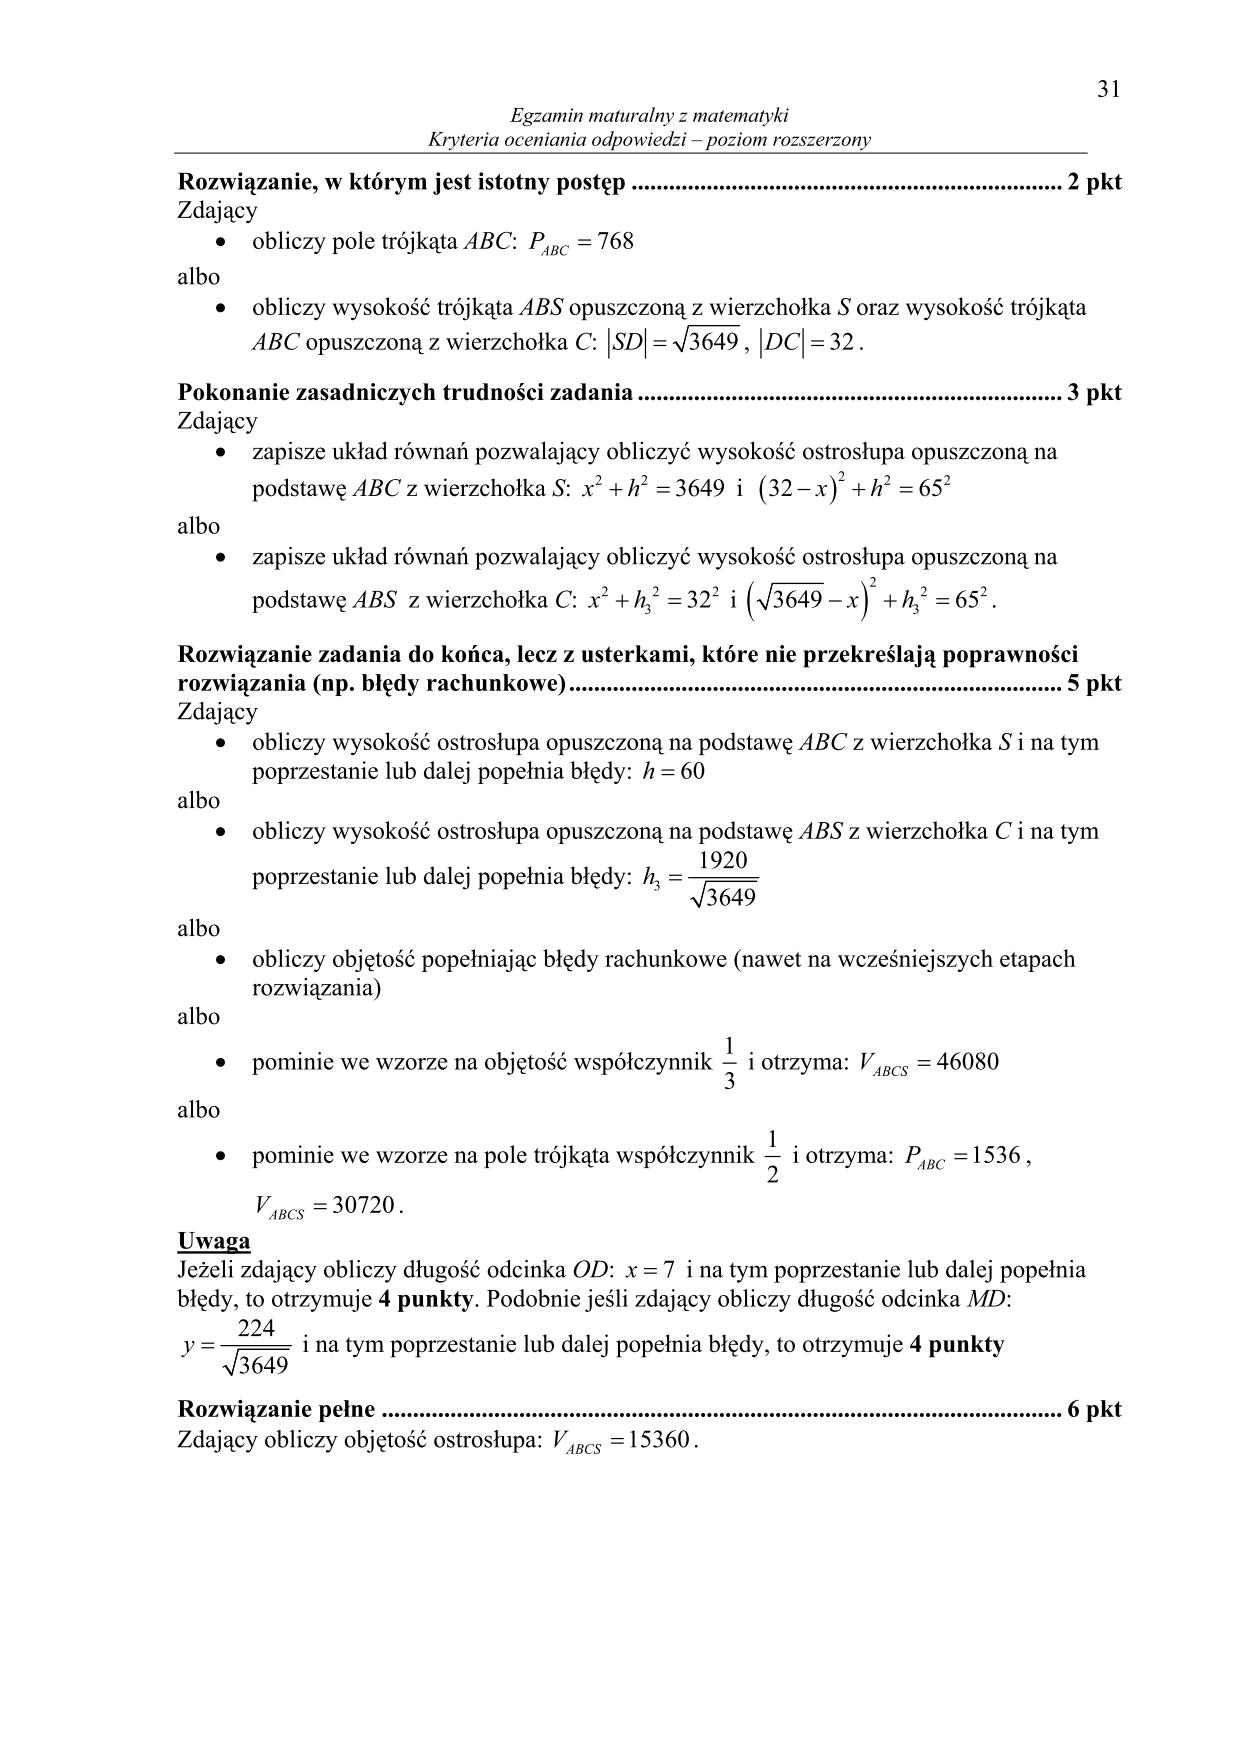 odpowiedzi-matematyka-poziom-rozszerzony-matura-2014-31